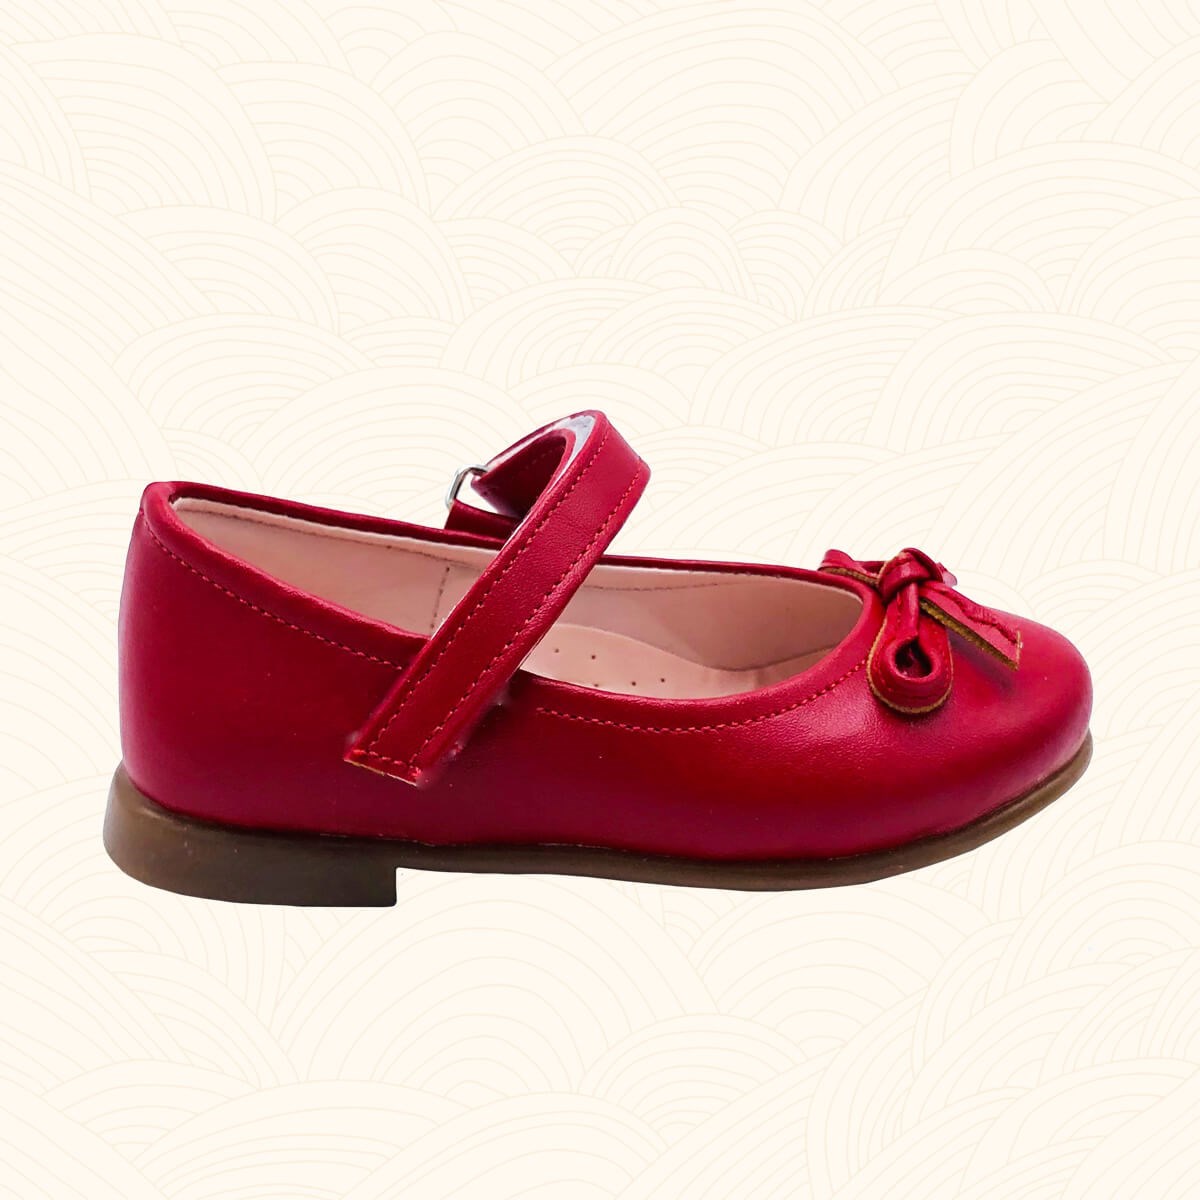 Kız Çocuk Babet Ayakkabı Kitty - Kırmızı Renk 2182 | Lilbugga